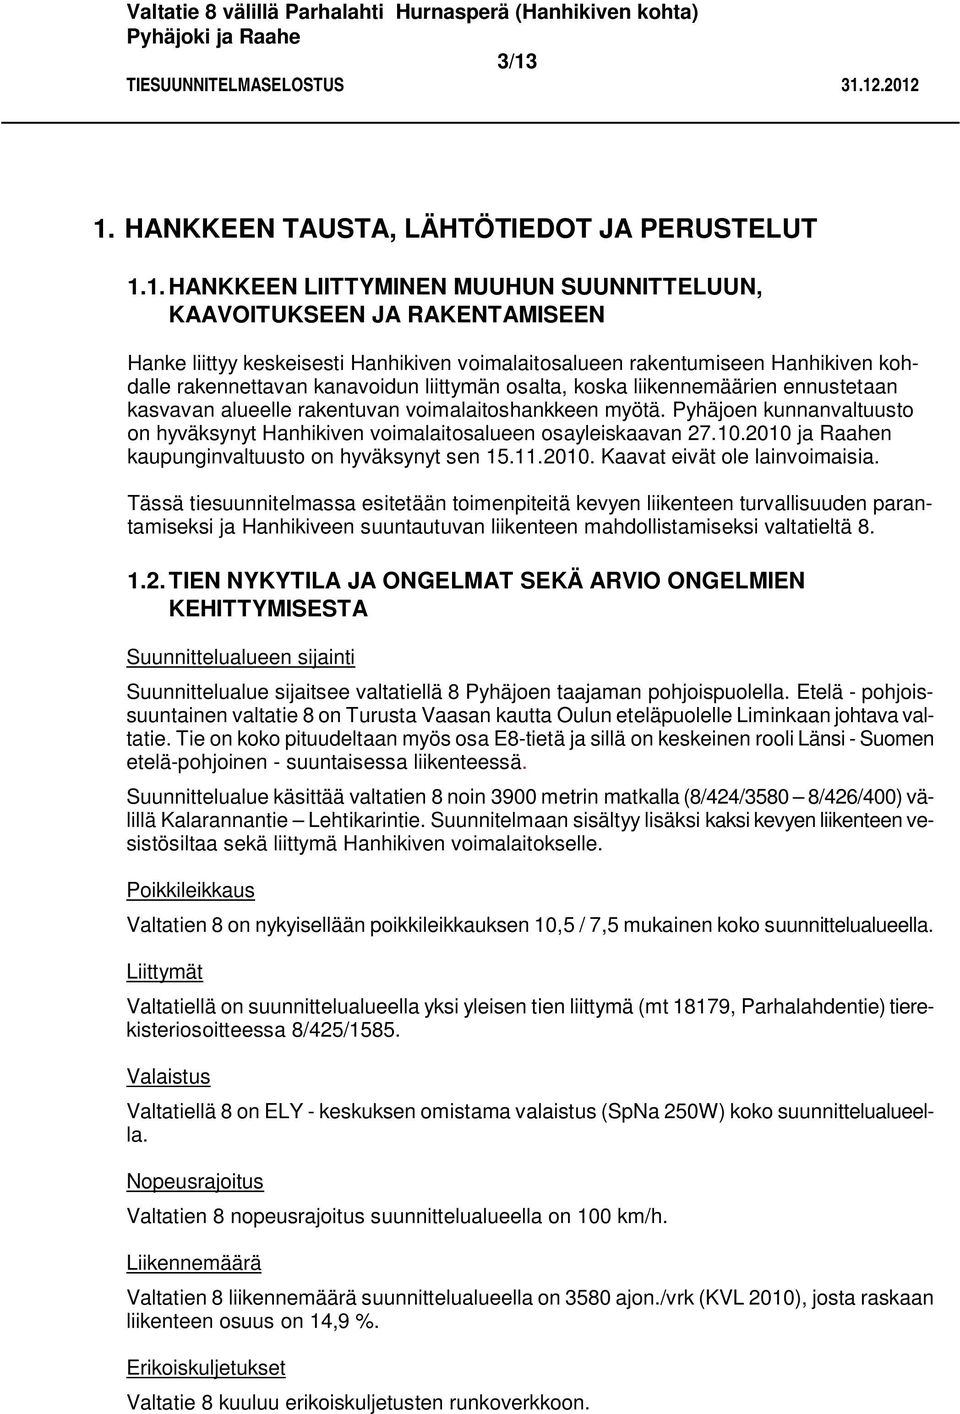 Pyhäjoen kunnanvaltuusto on hyväksynyt Hanhikiven voimalaitosalueen osayleiskaavan 27.10.2010 ja Raahen kaupunginvaltuusto on hyväksynyt sen 15.11.2010. Kaavat eivät ole lainvoimaisia.